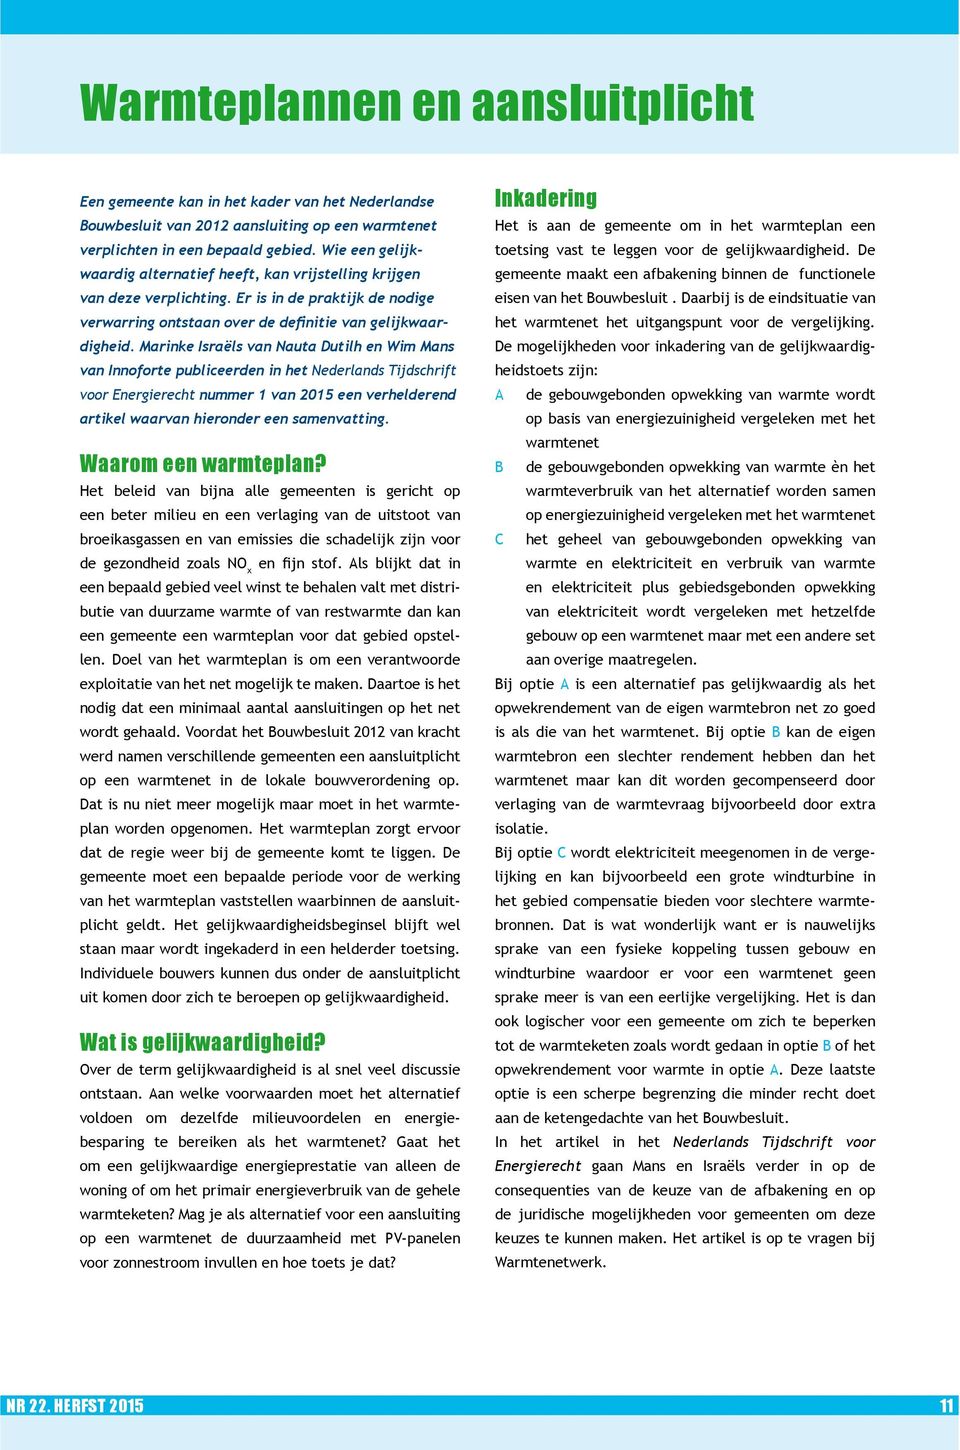 Marinke Israëls van Nauta Dutilh en Wim Mans van Innoforte publiceerden in het Nederlands Tijdschrift voor Energierecht nummer 1 van 2015 een verhelderend artikel waarvan hieronder een samenvatting.